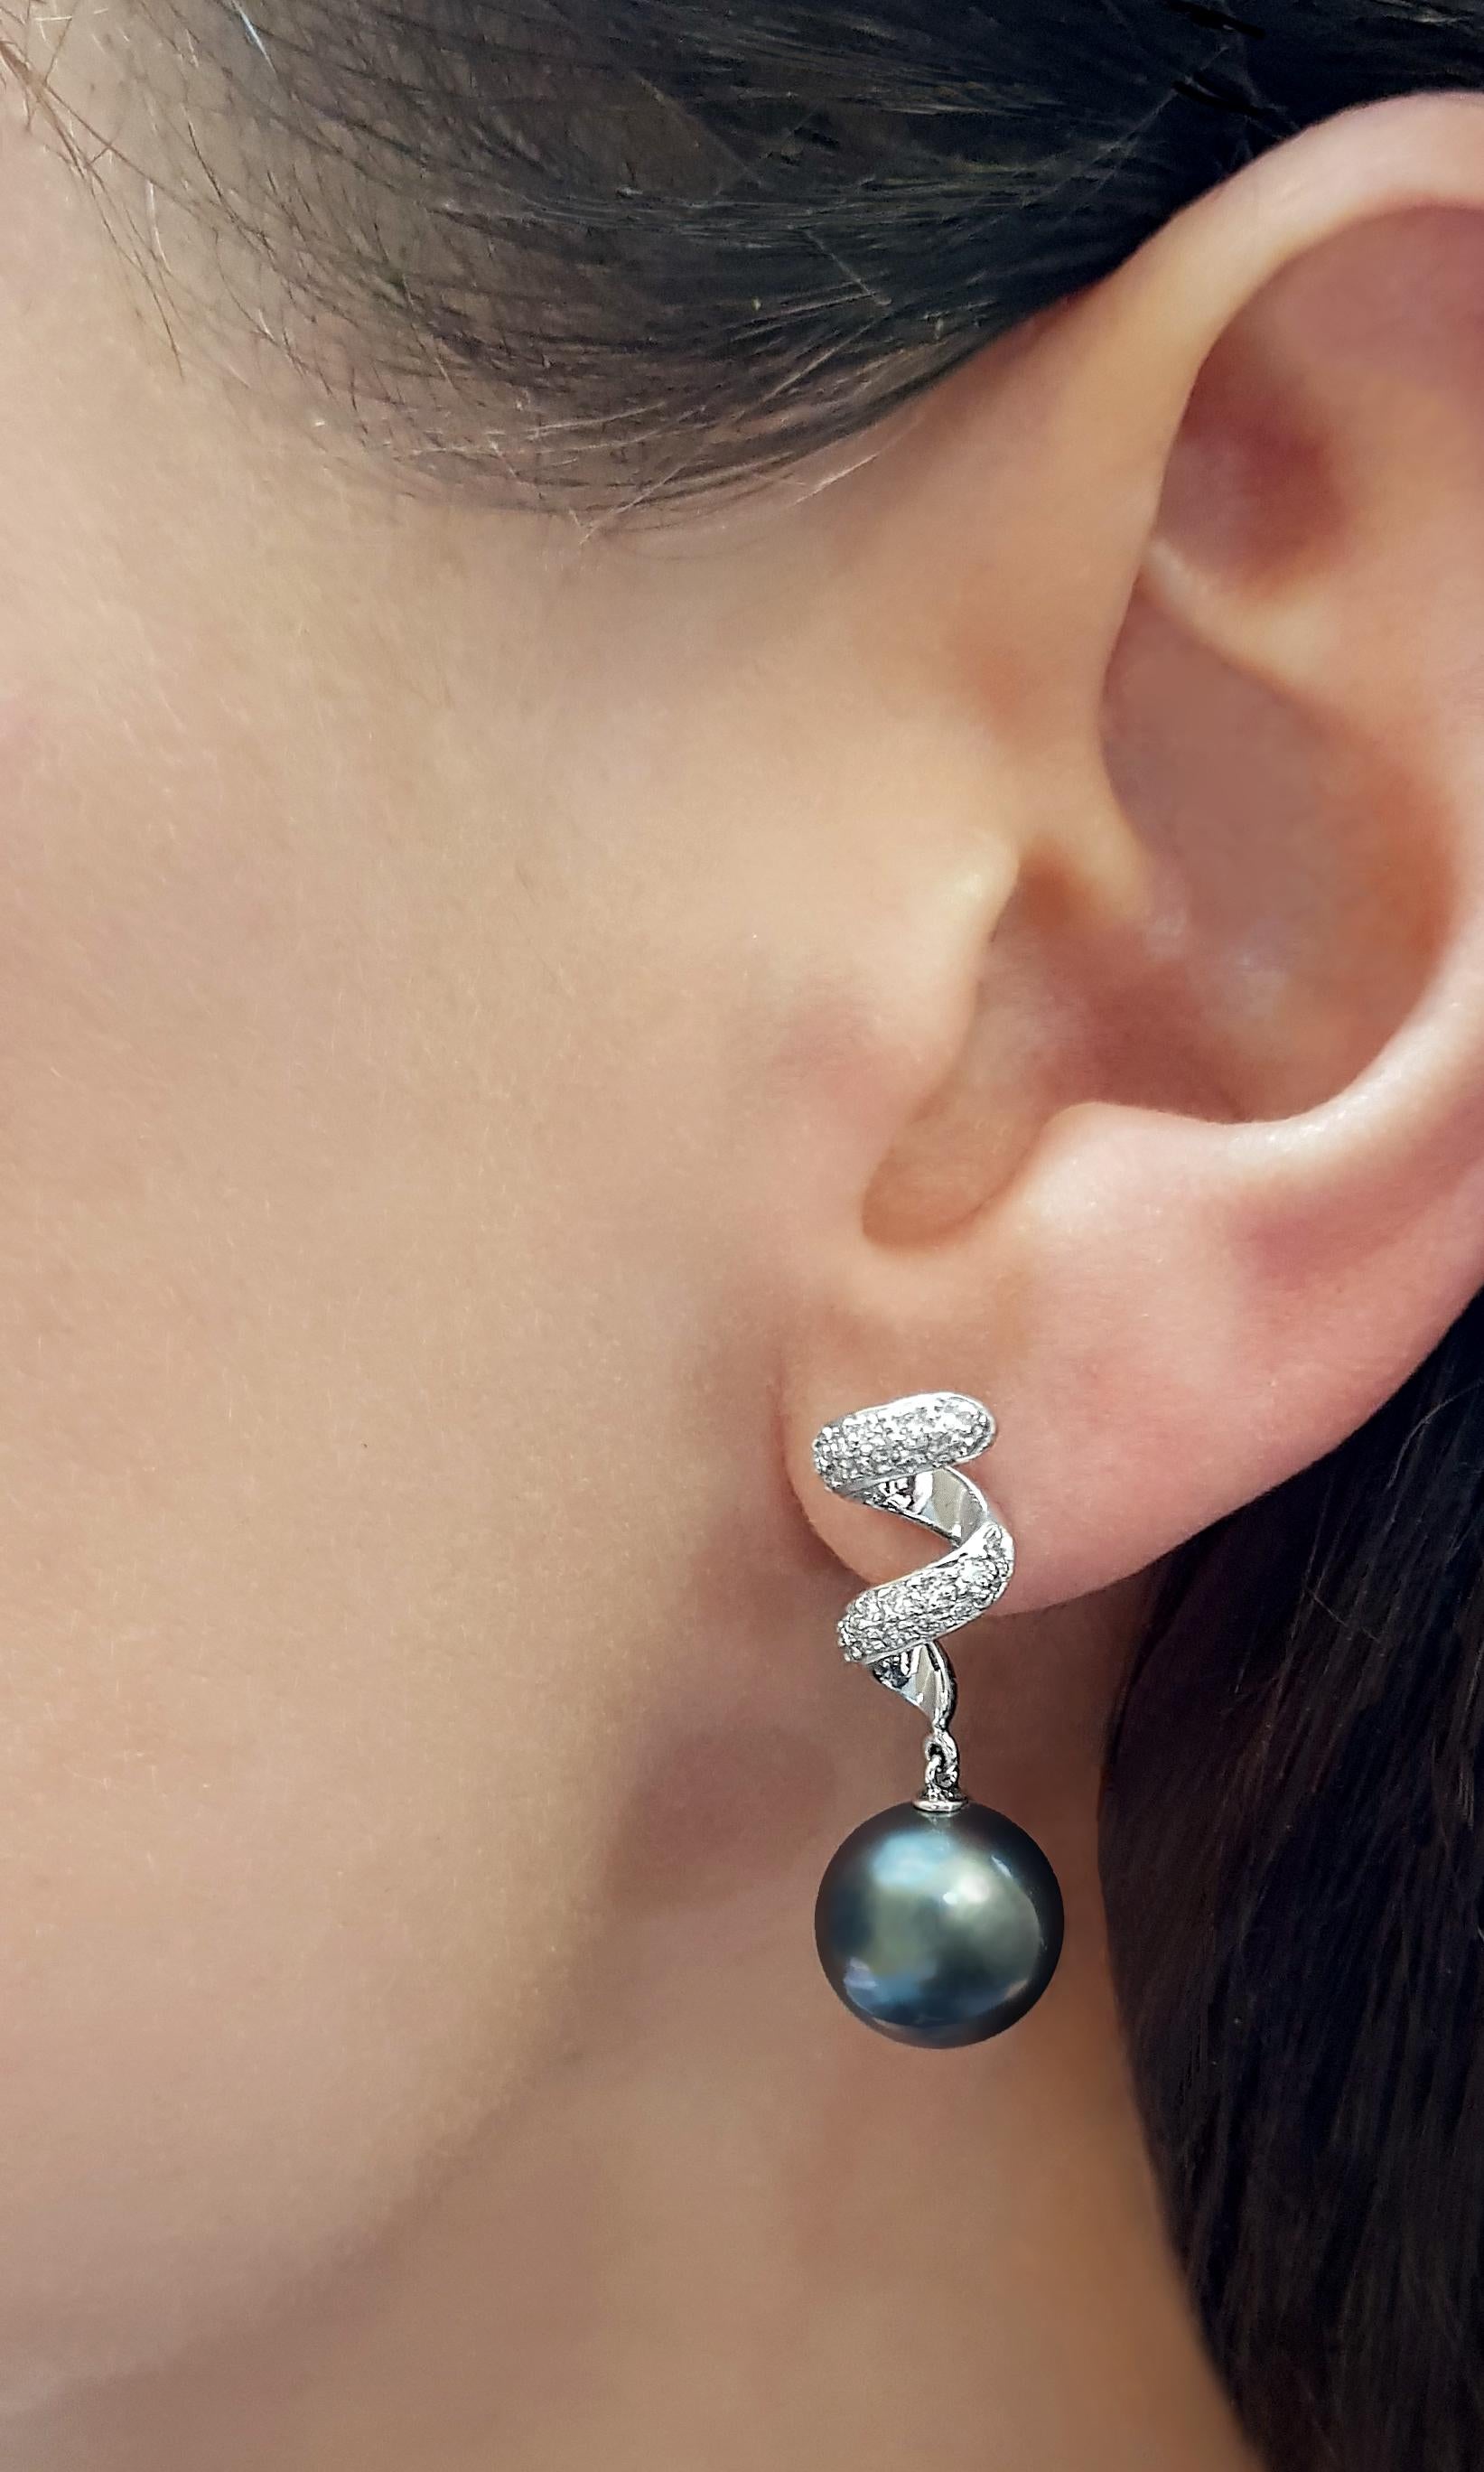 Diese modernen Ohrringe von Yoko London zeichnen sich durch glänzende Tahiti-Perlen aus, die von einem modernen Wirbel aus Diamanten umgeben sind. Die Ohrringe sind in 18 Karat Weißgold gefasst, um die satten Farbtöne der Perlen und das weiße